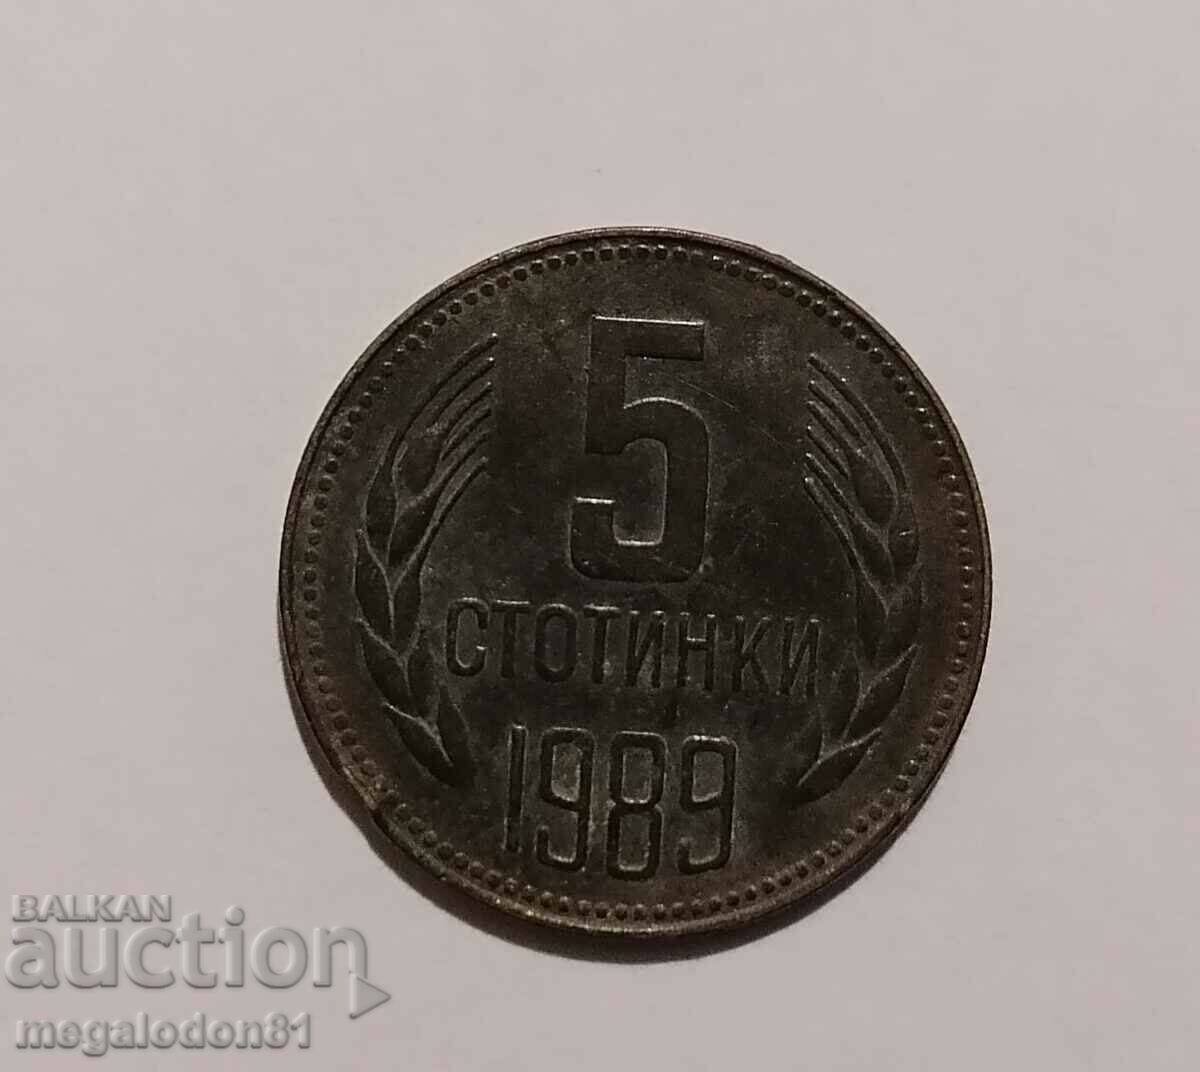 Bulgaria - 5 cenți 1989